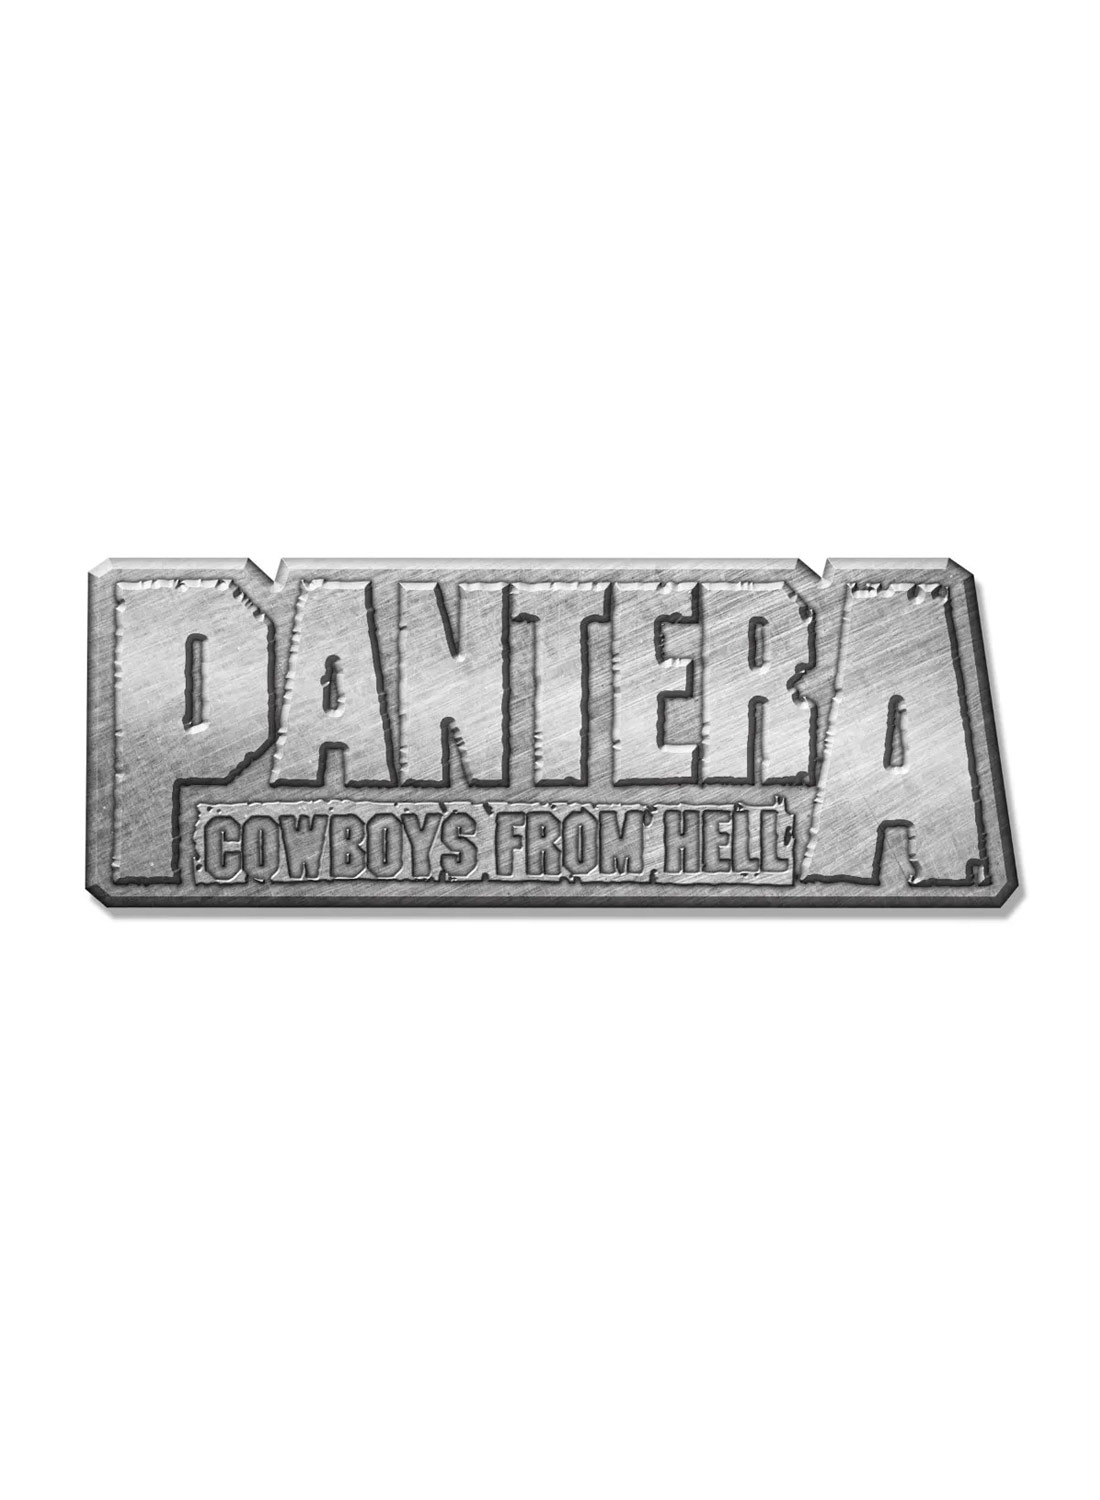 Pantera Cowboys From Hell Metal Pin Badge